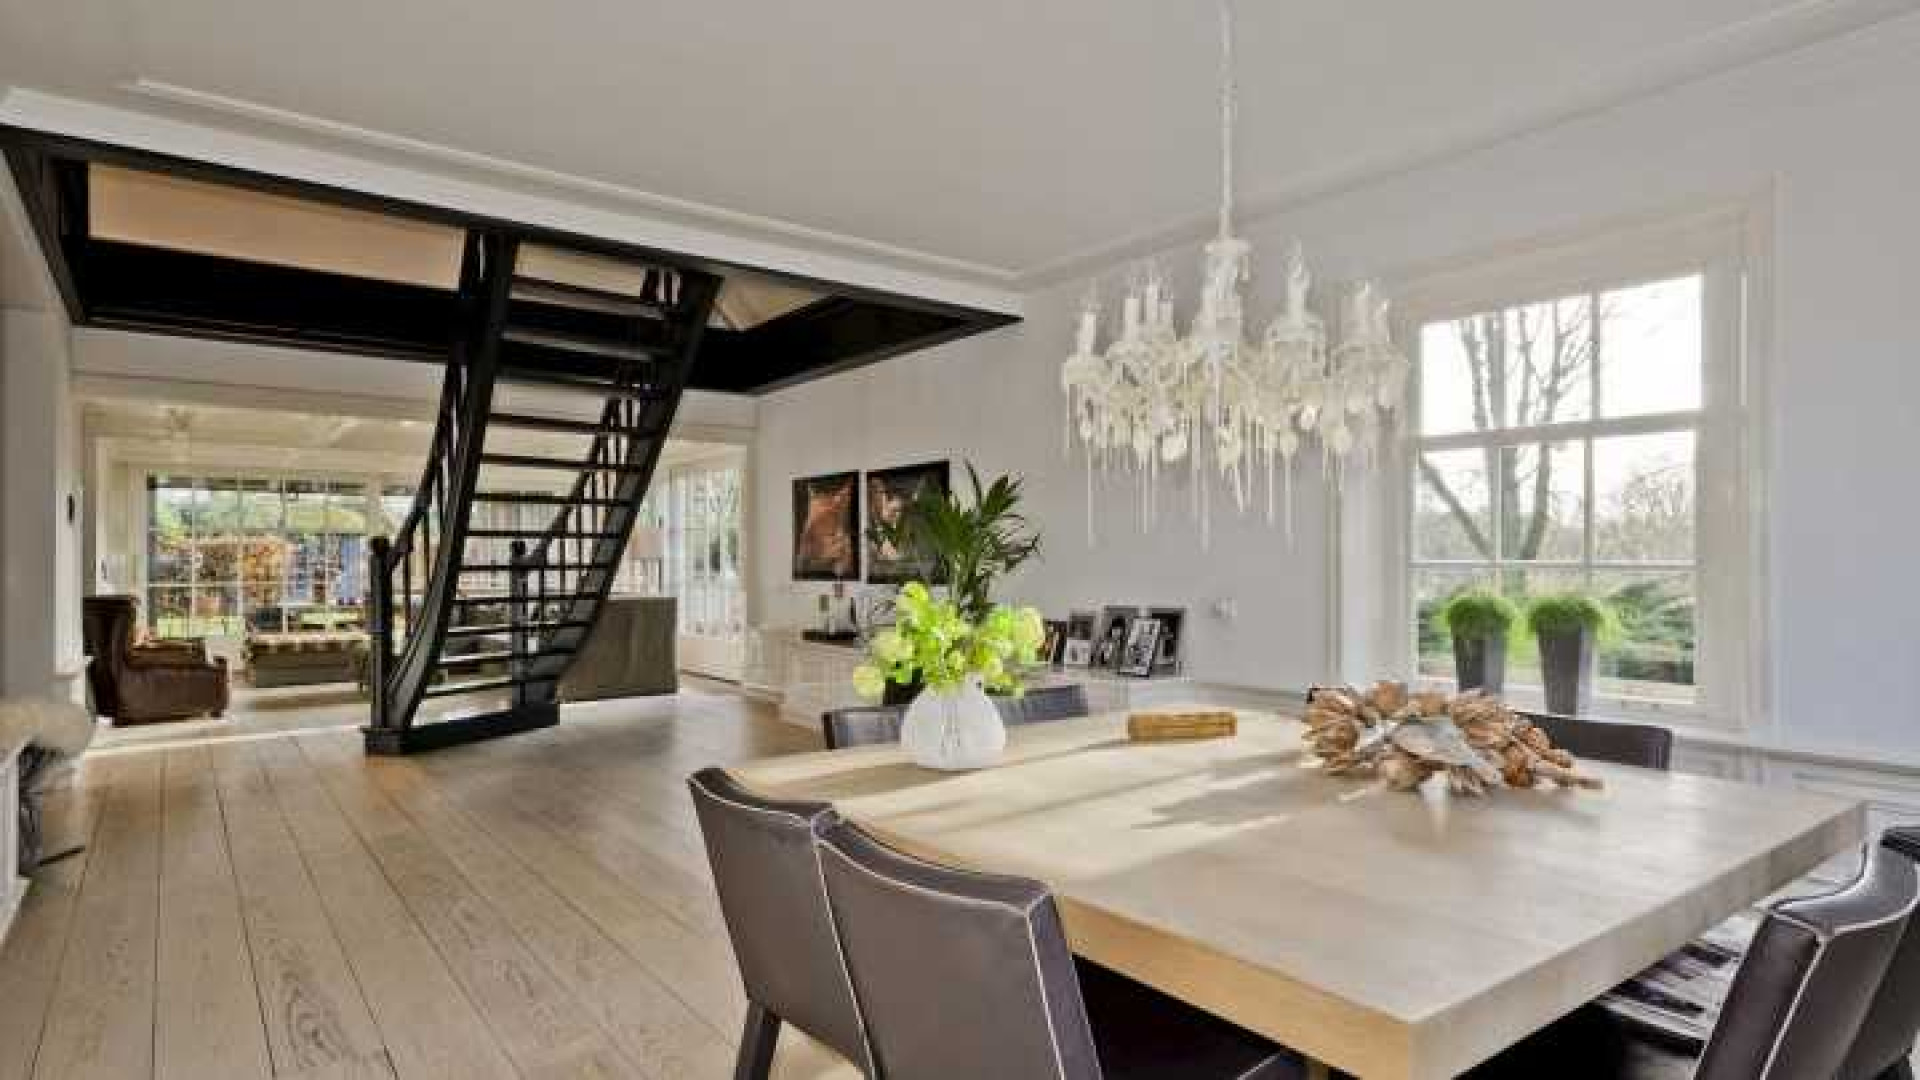 Henny Huisman verkoopt zijn villa zwaar onder de vraagprijs. Zie foto's 9